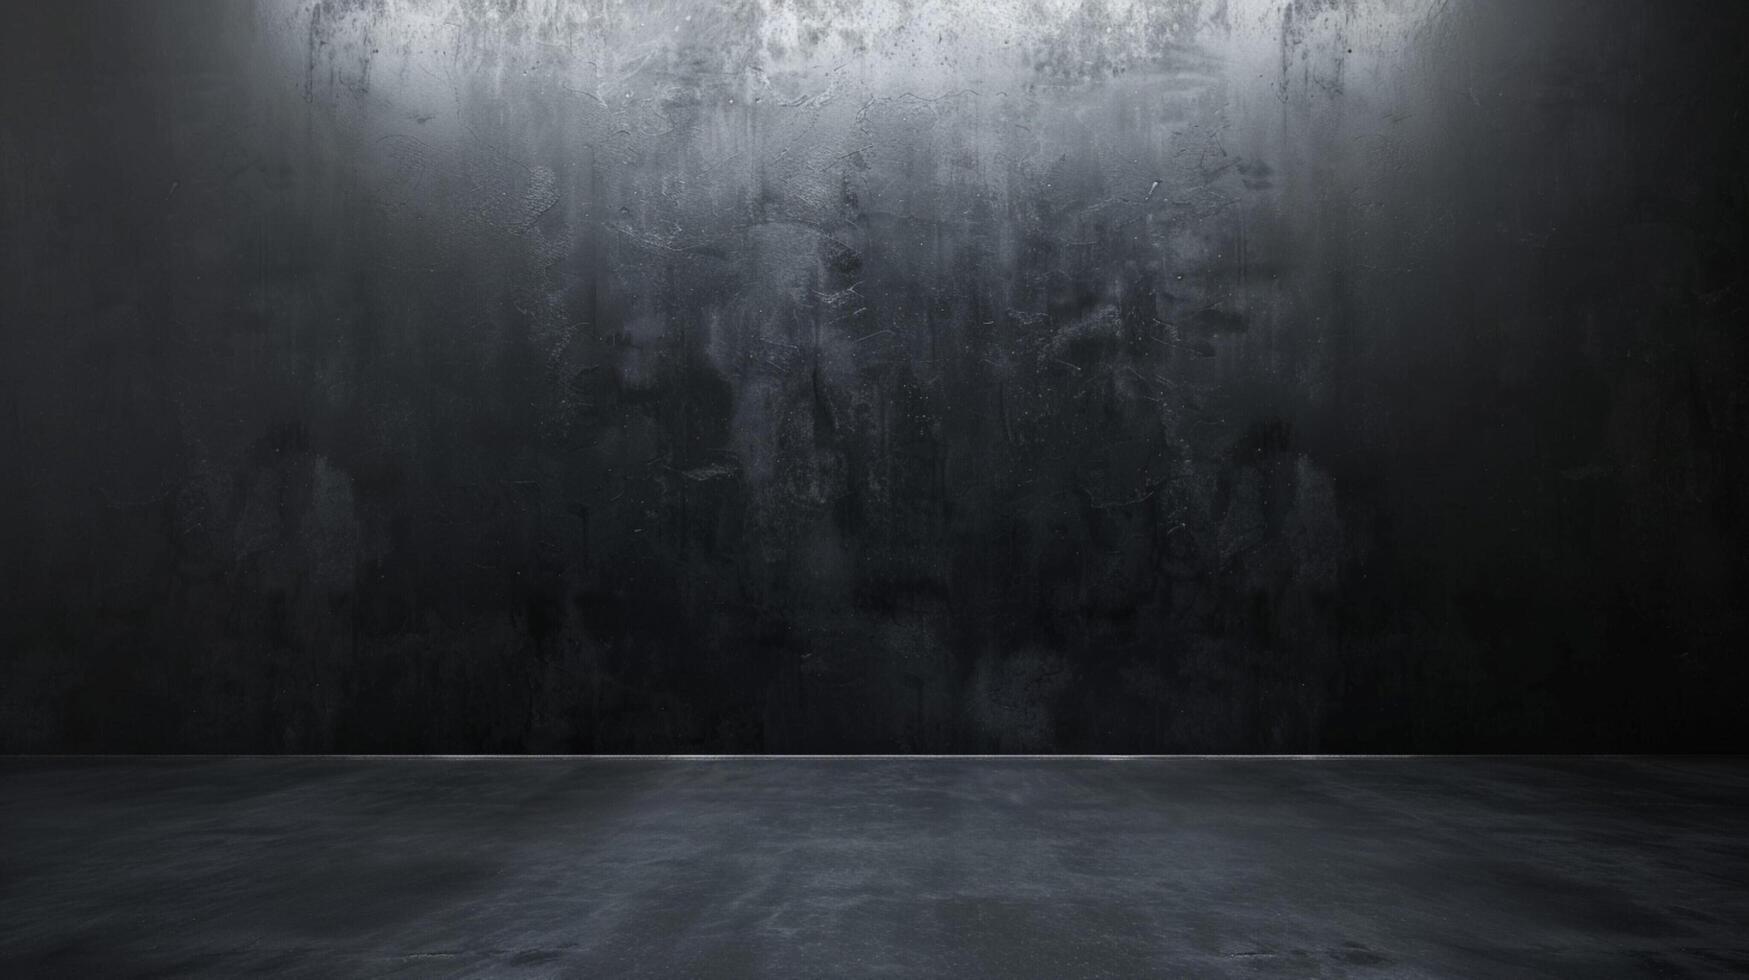 astratto lusso sfocatura buio grigio e nero pendenza foto